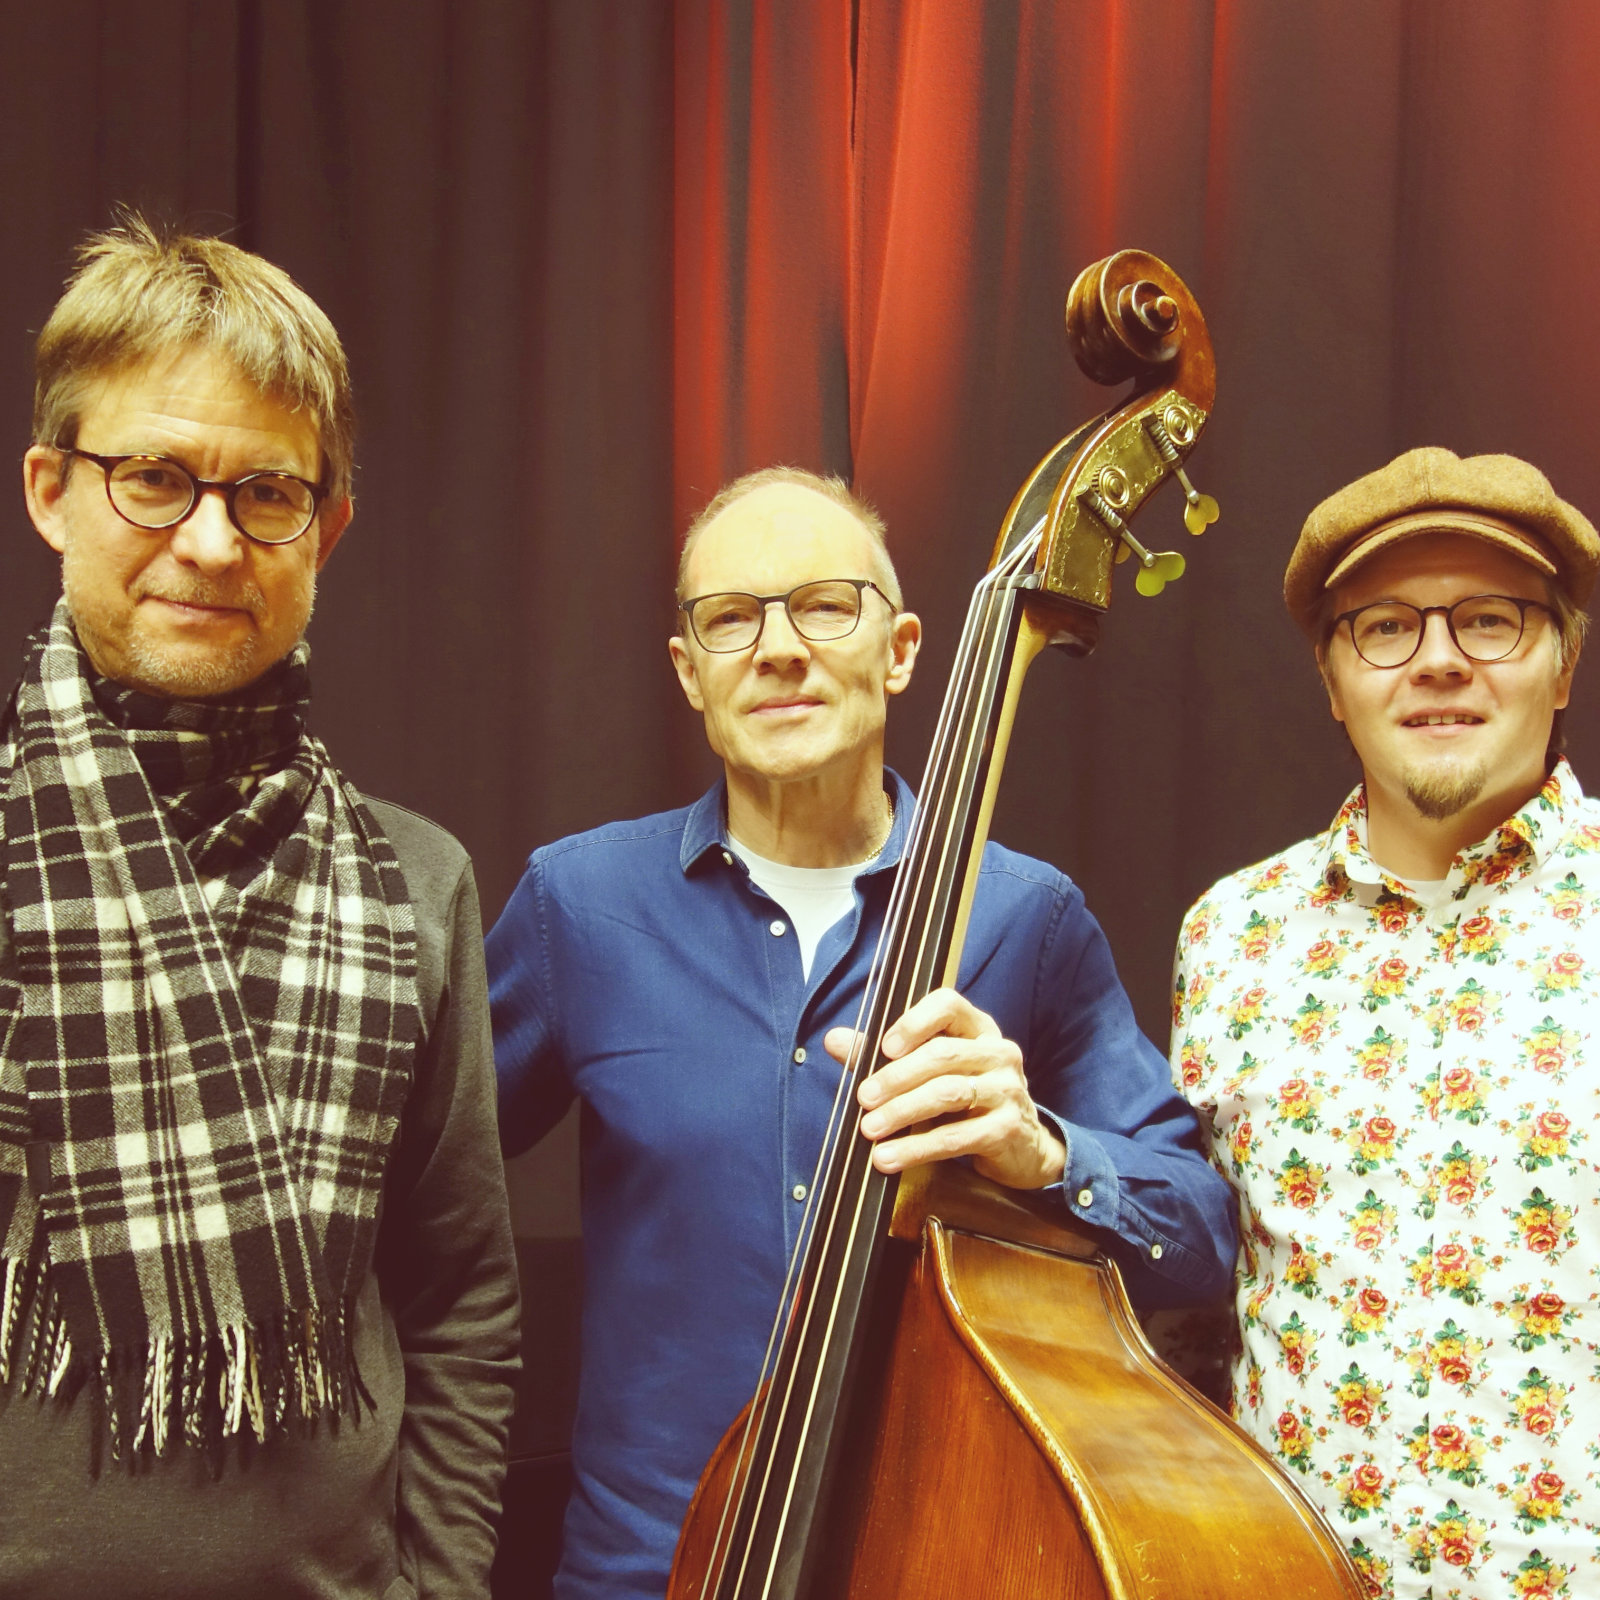 Kerkkä Trio musicians